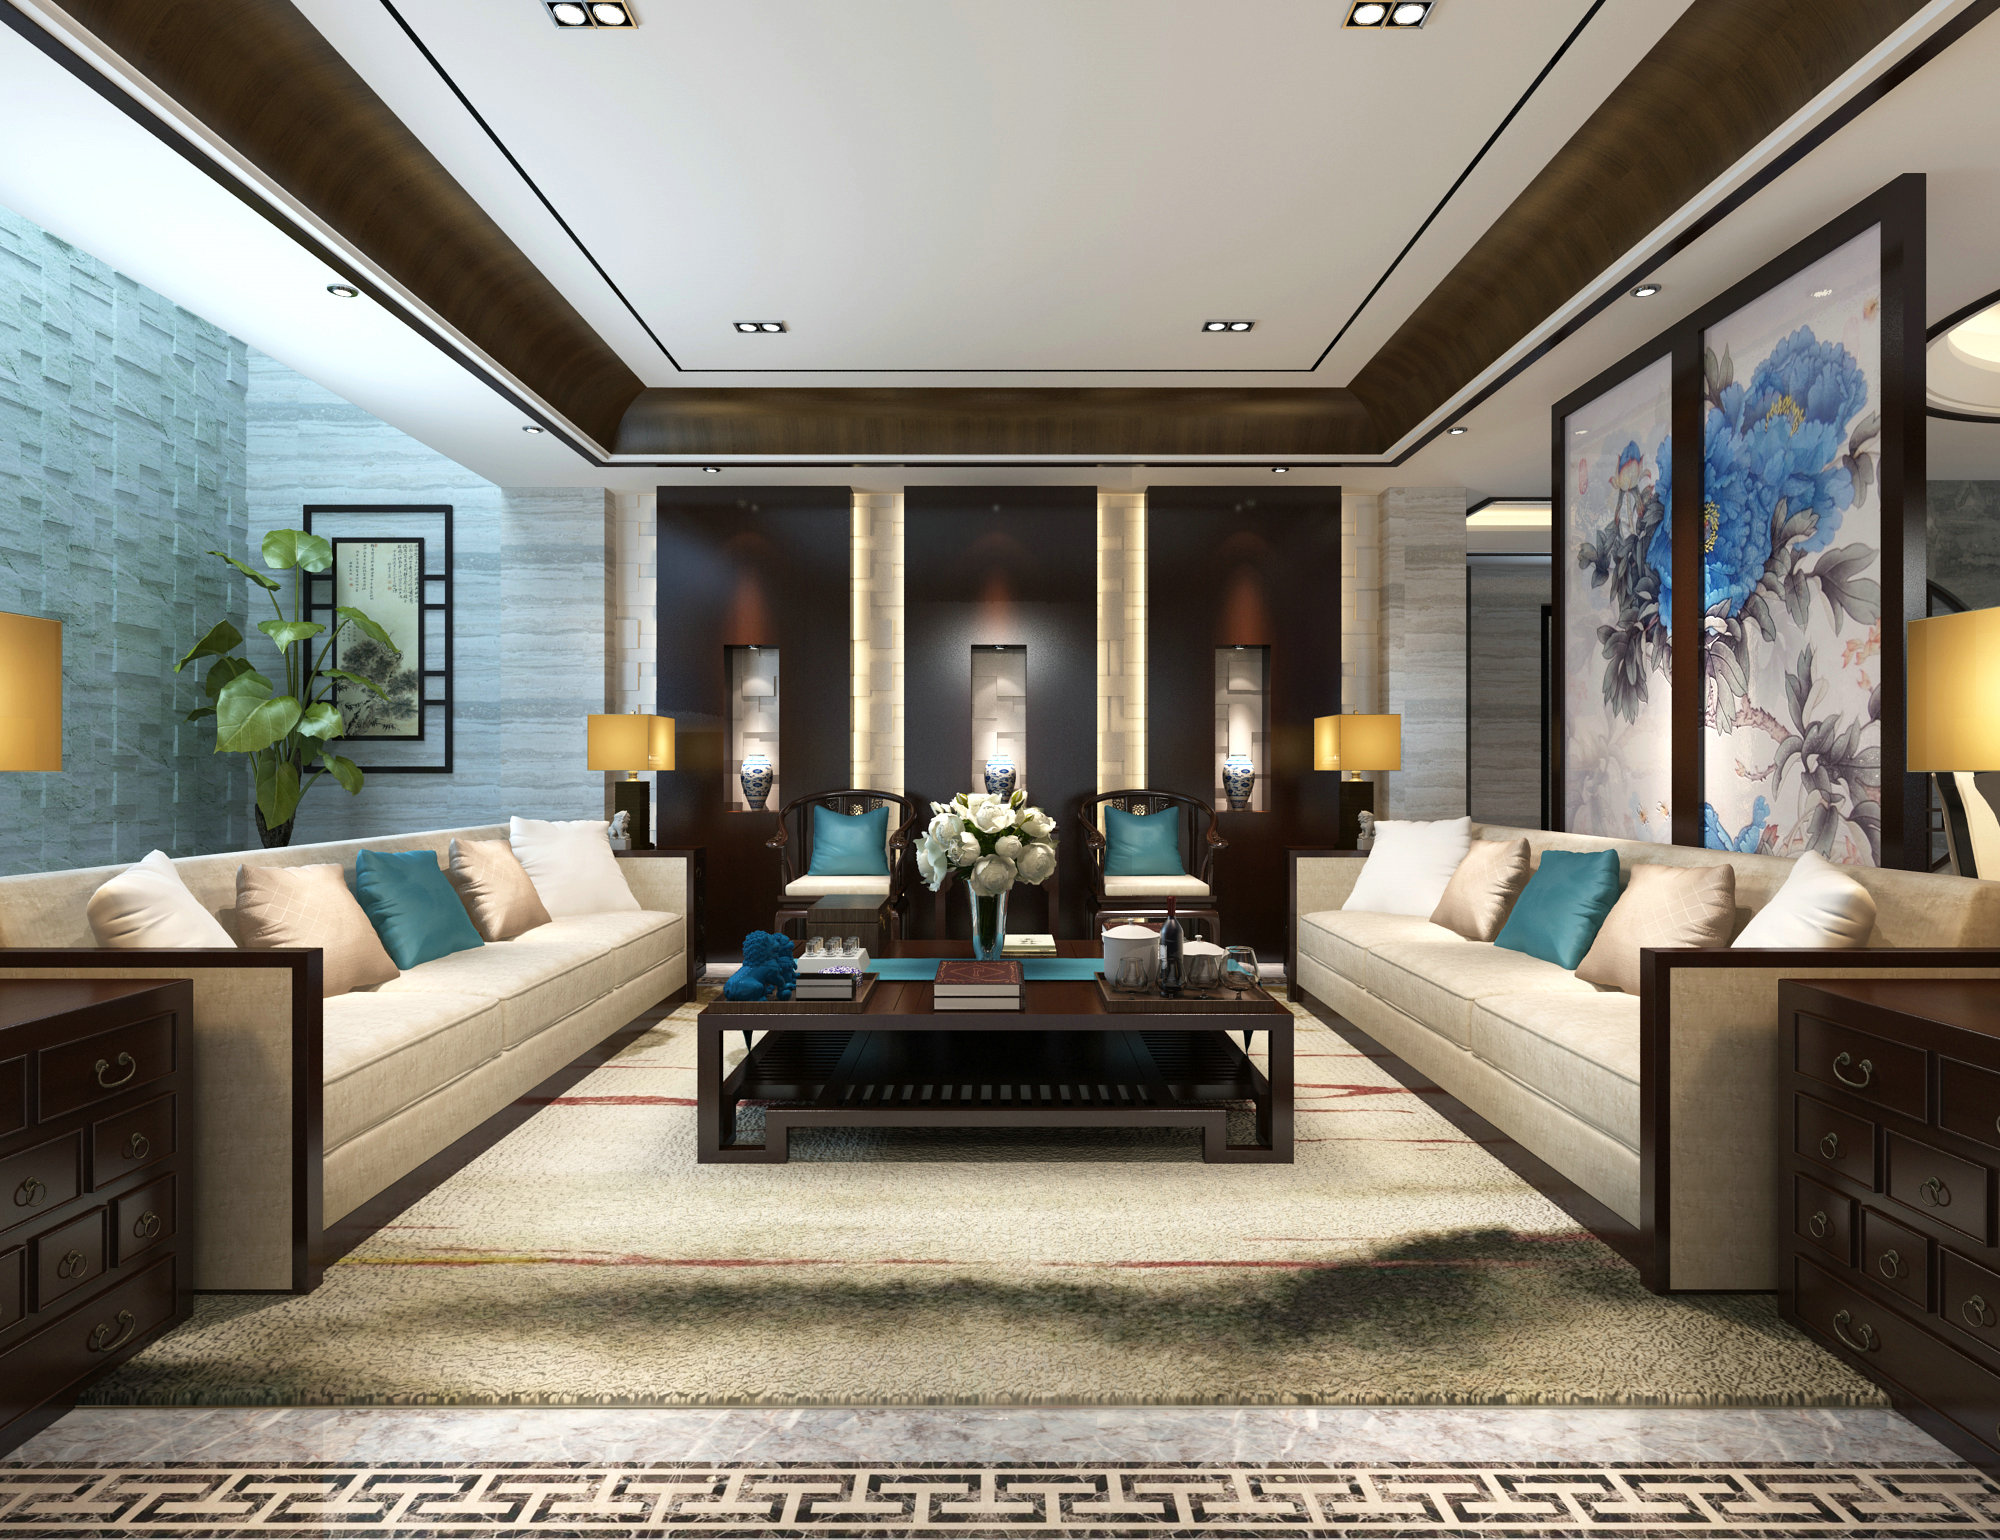 长泰西郊 别墅装修 腾龙设计 客厅图片来自腾龙设计在长泰西郊别墅美式风格设计的分享